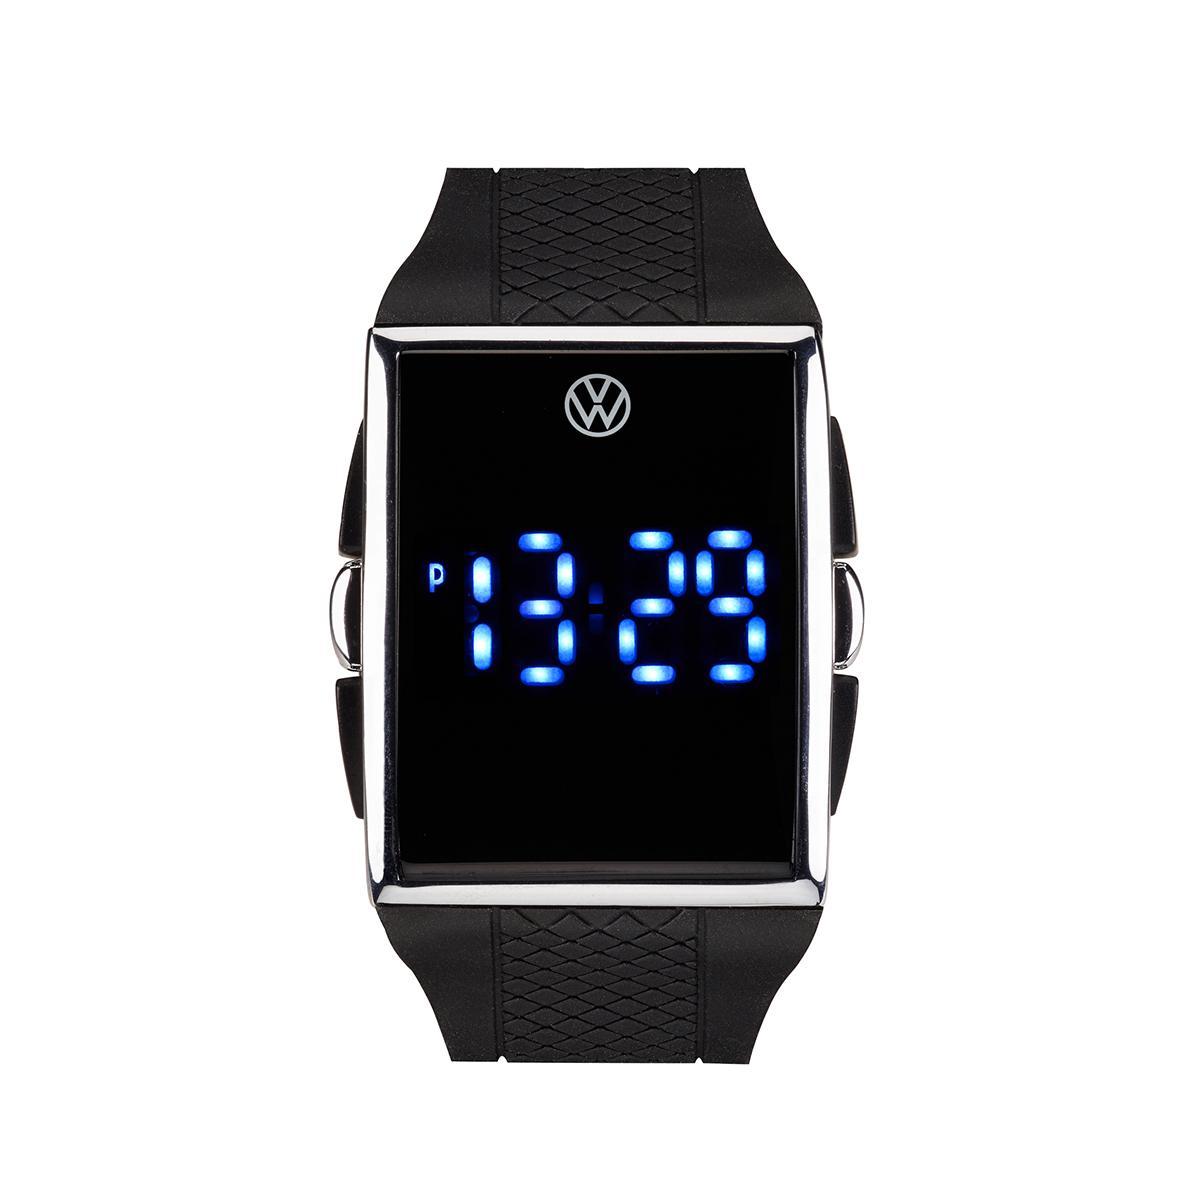 Наручные часы Volkswagen 000050800gycc. 000050800ac часы. 000050800g YCC. Часы Volkswagen мужские наручные. Часы volkswagen